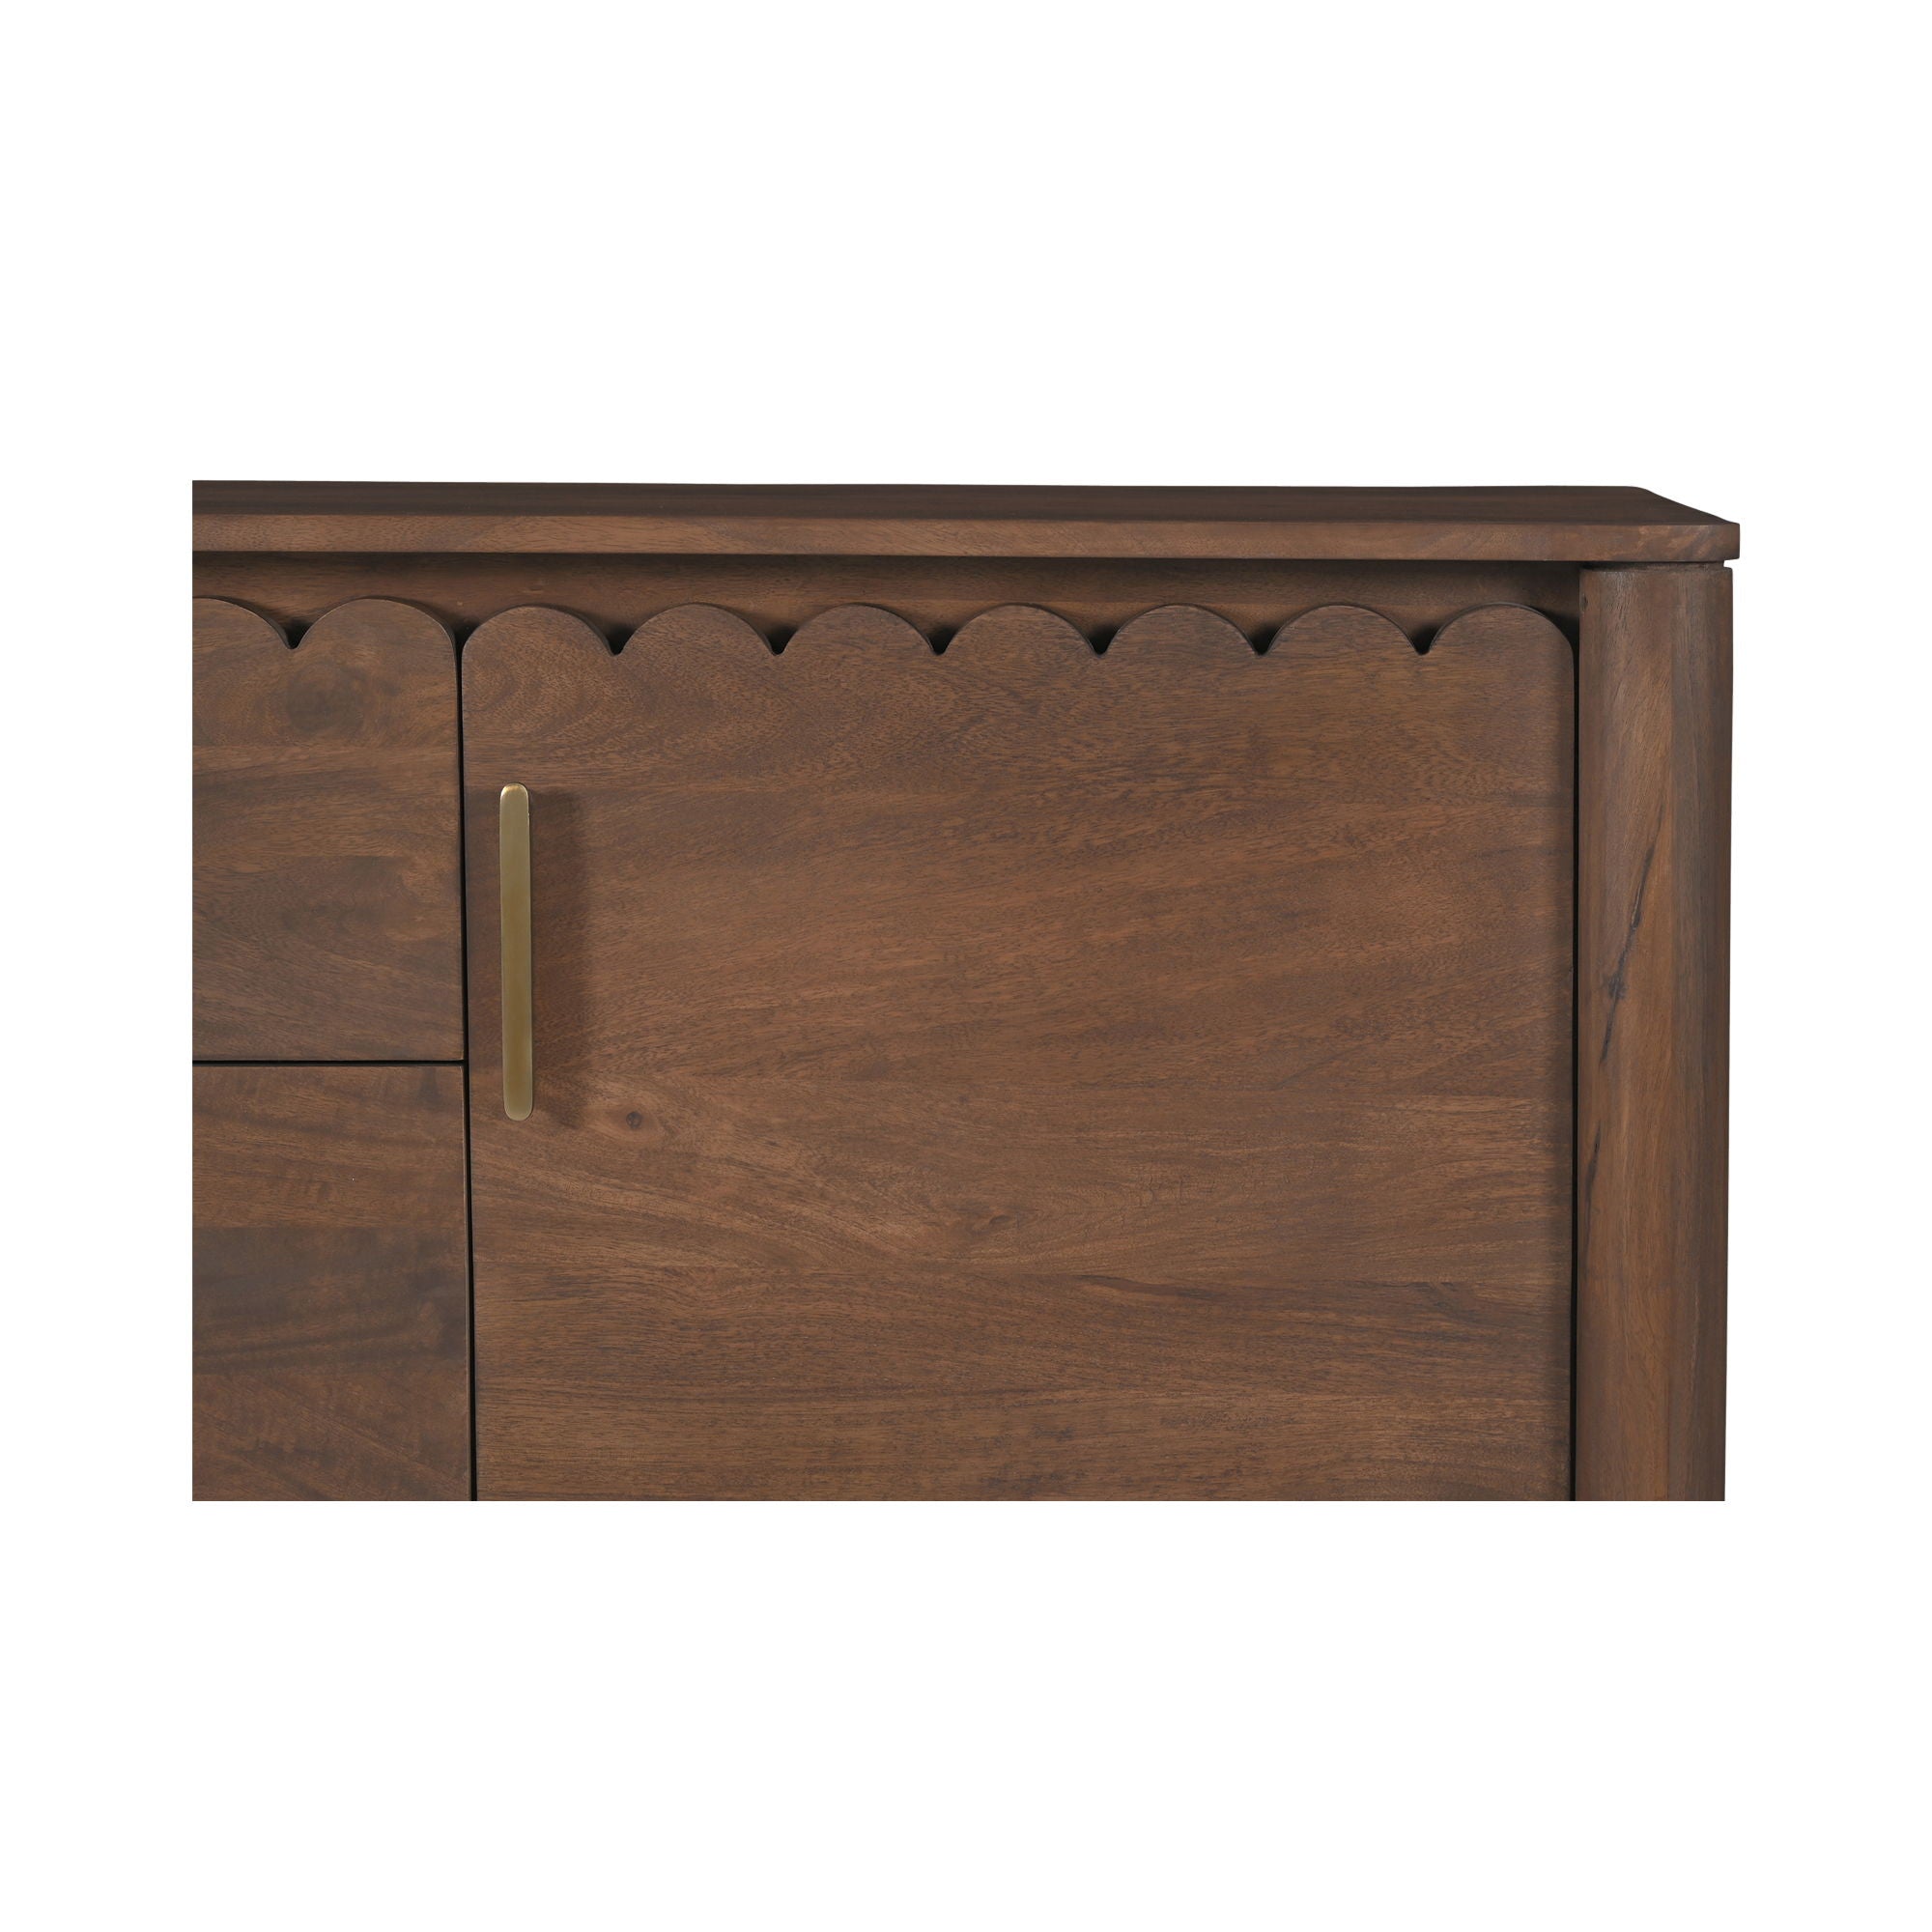 Wiley - 3 Drawer Sideboard - Vintage Brown